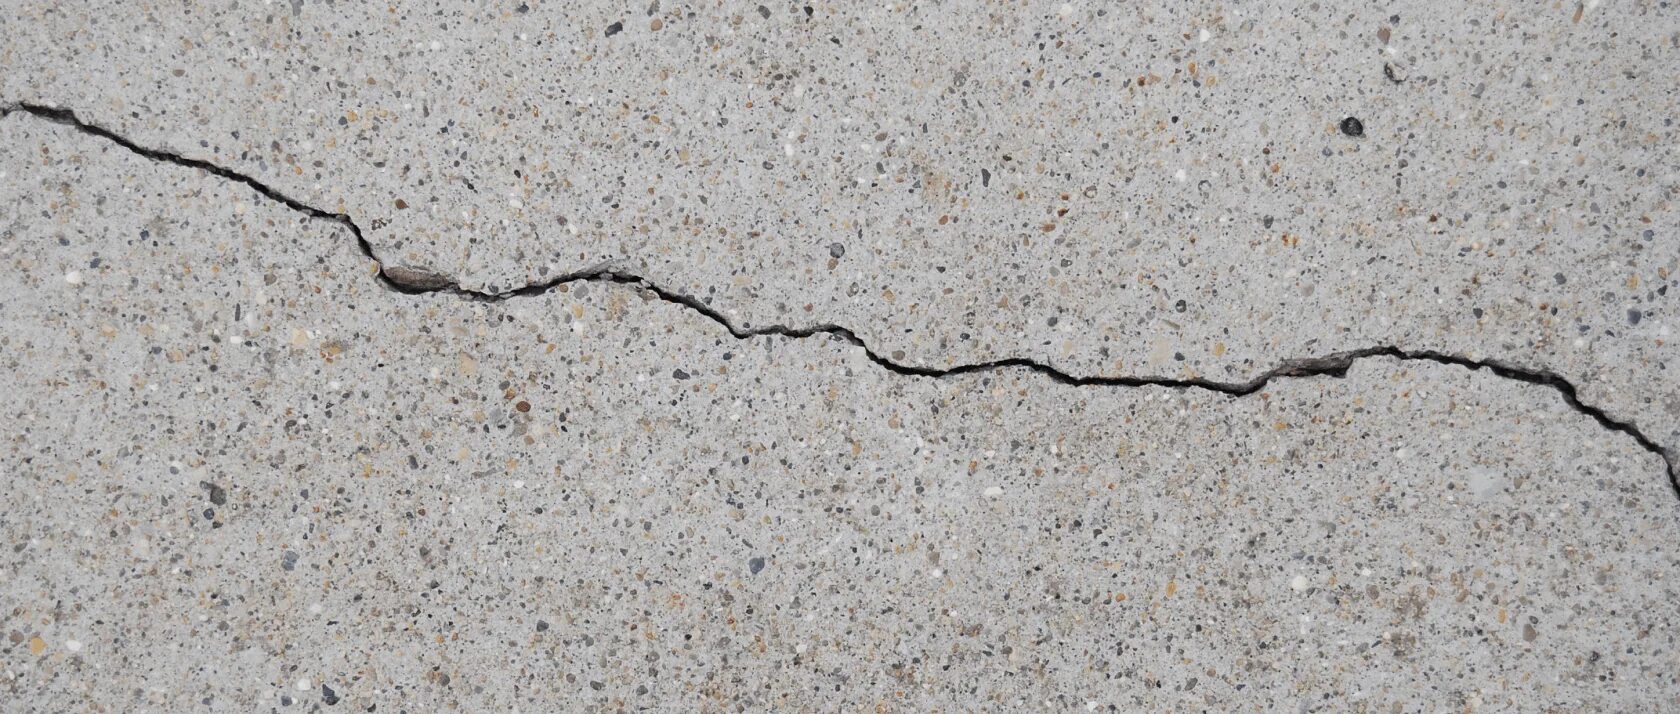 Наличие трещин. Трещины в бетоне. Усадочные трещины в бетоне. Потрескавшийся бетон. Бетонная стена с трещинами.